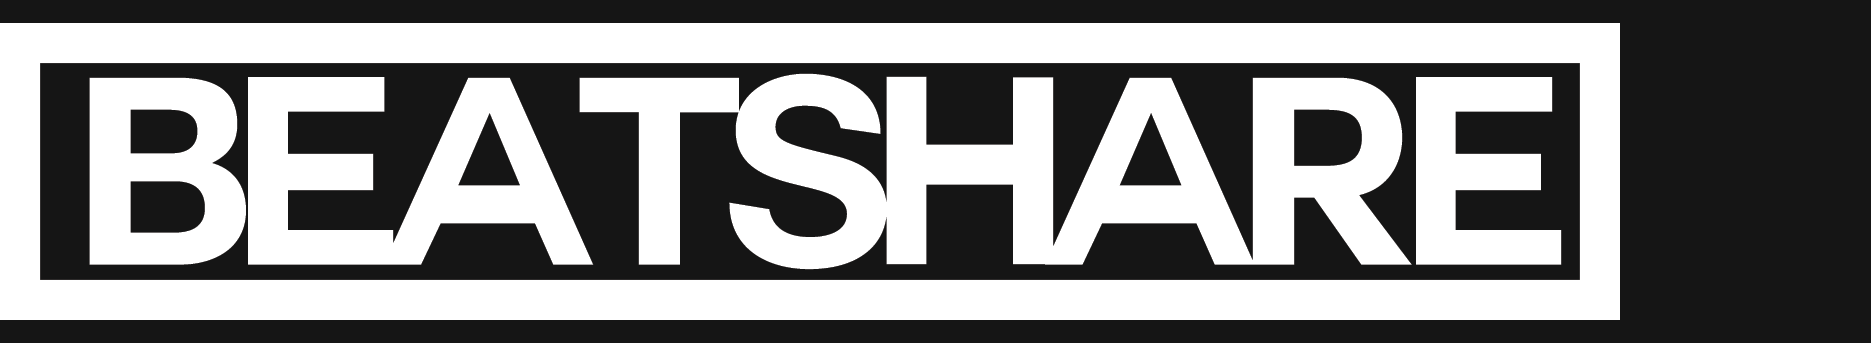 Beatshare: nový projekt pre DJov a producentov